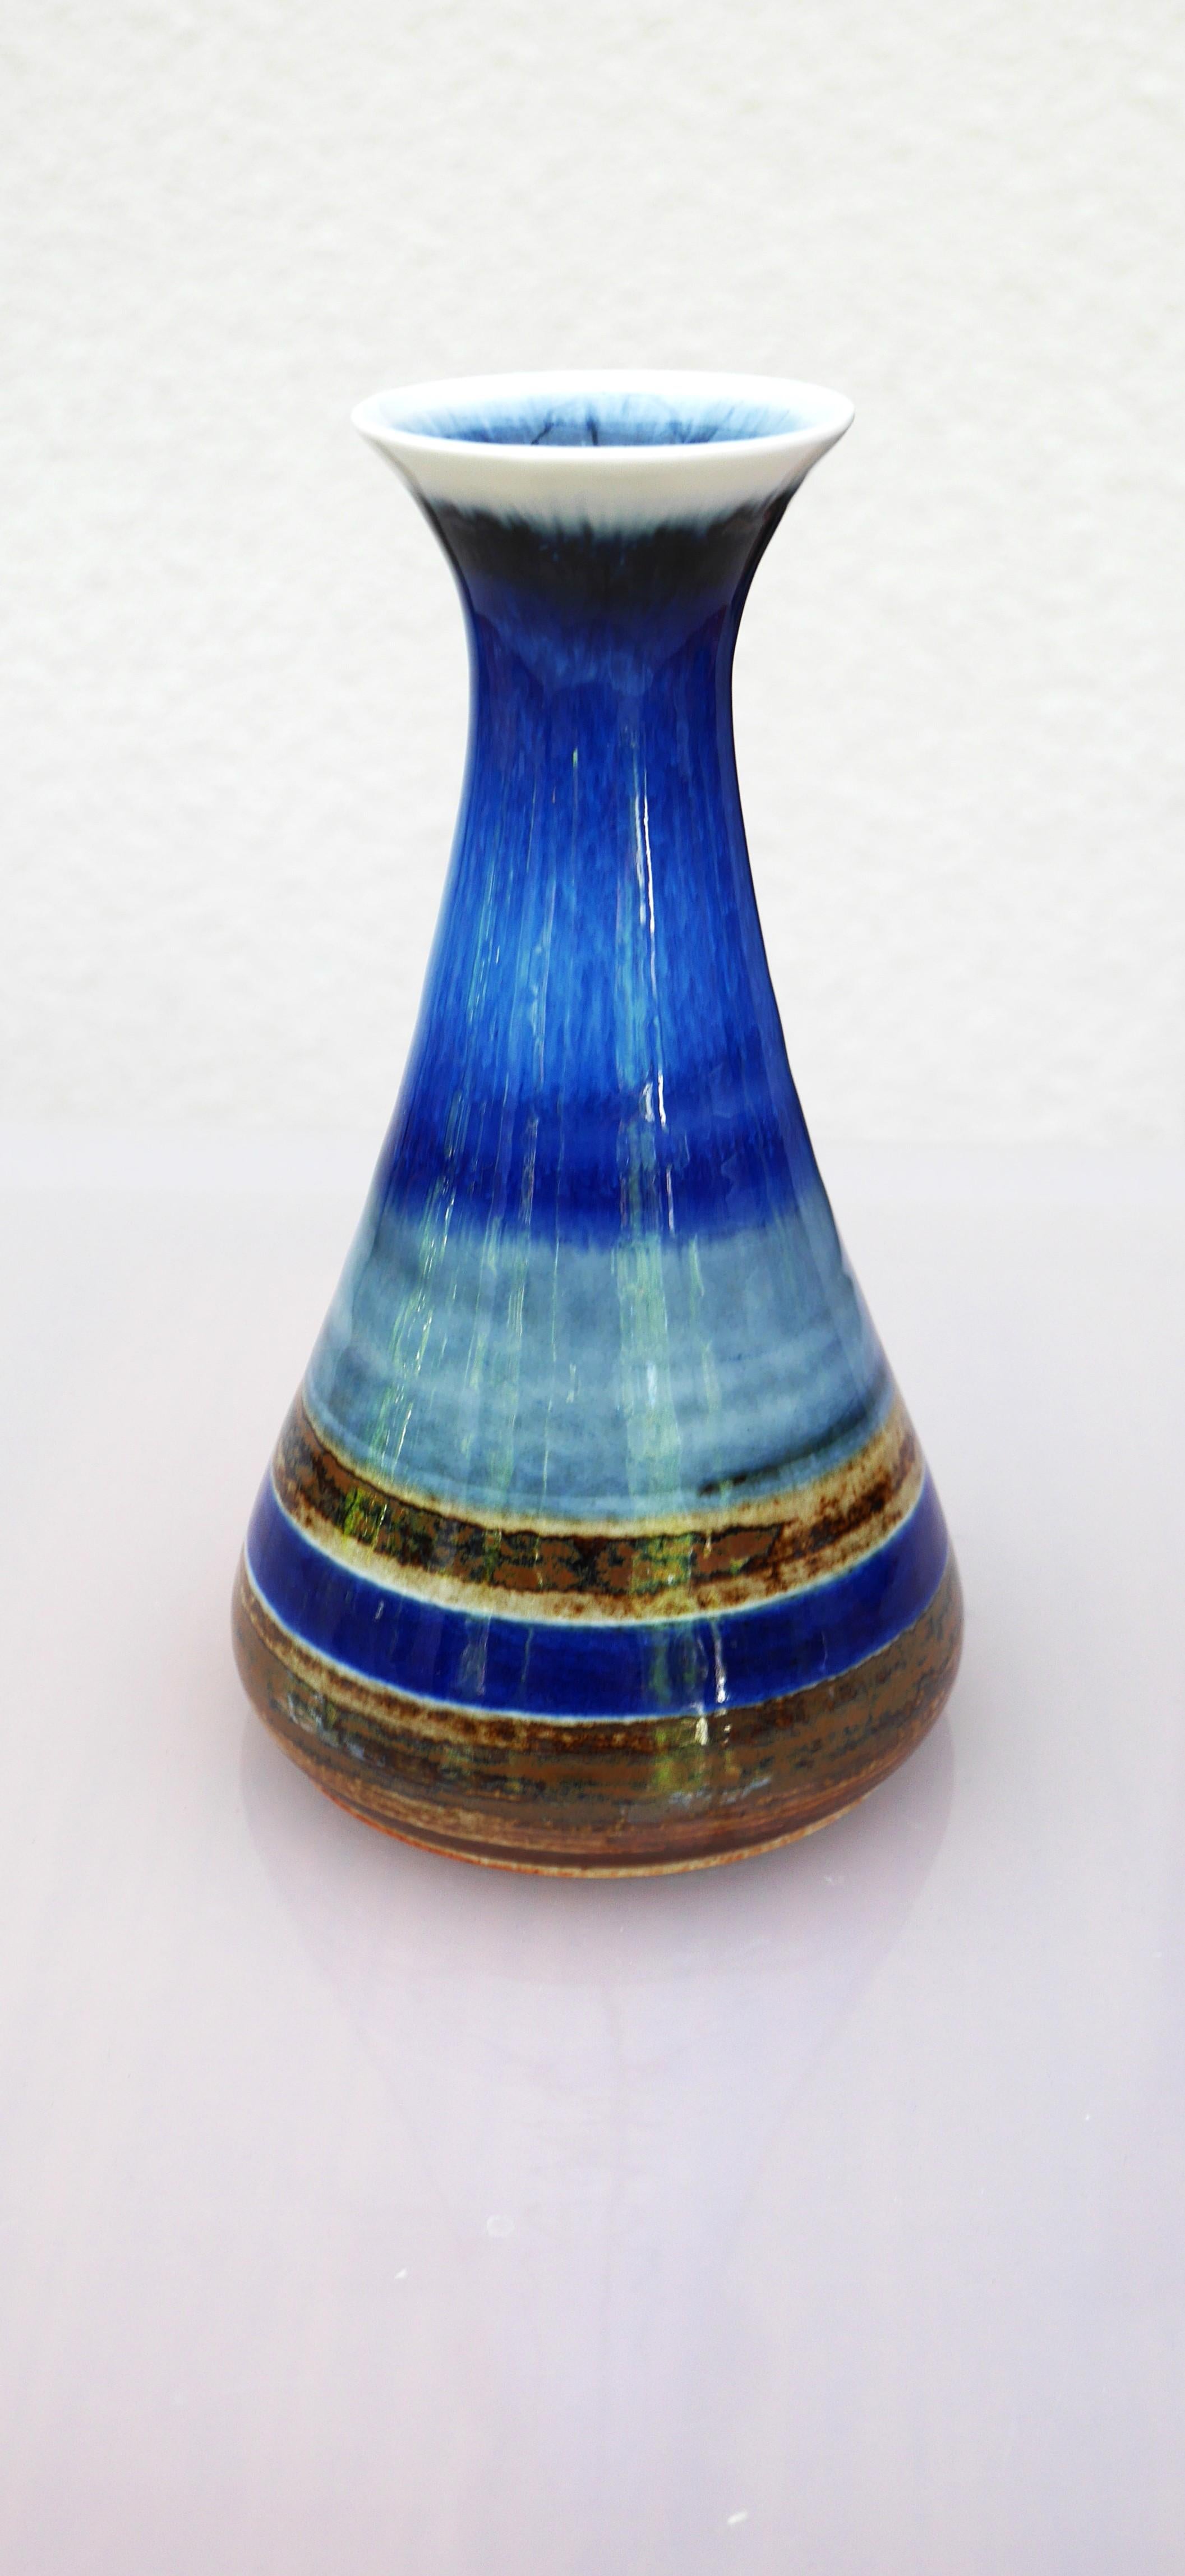 Un magnifique vase en porcelaine vintage de production studio, fait à la main par Gösta Millberg pour Rörstrand, Suède. Comme il s'agit d'une production de studio, il n'y a qu'un nombre limité de vases produits dans la même série. Les formes sont